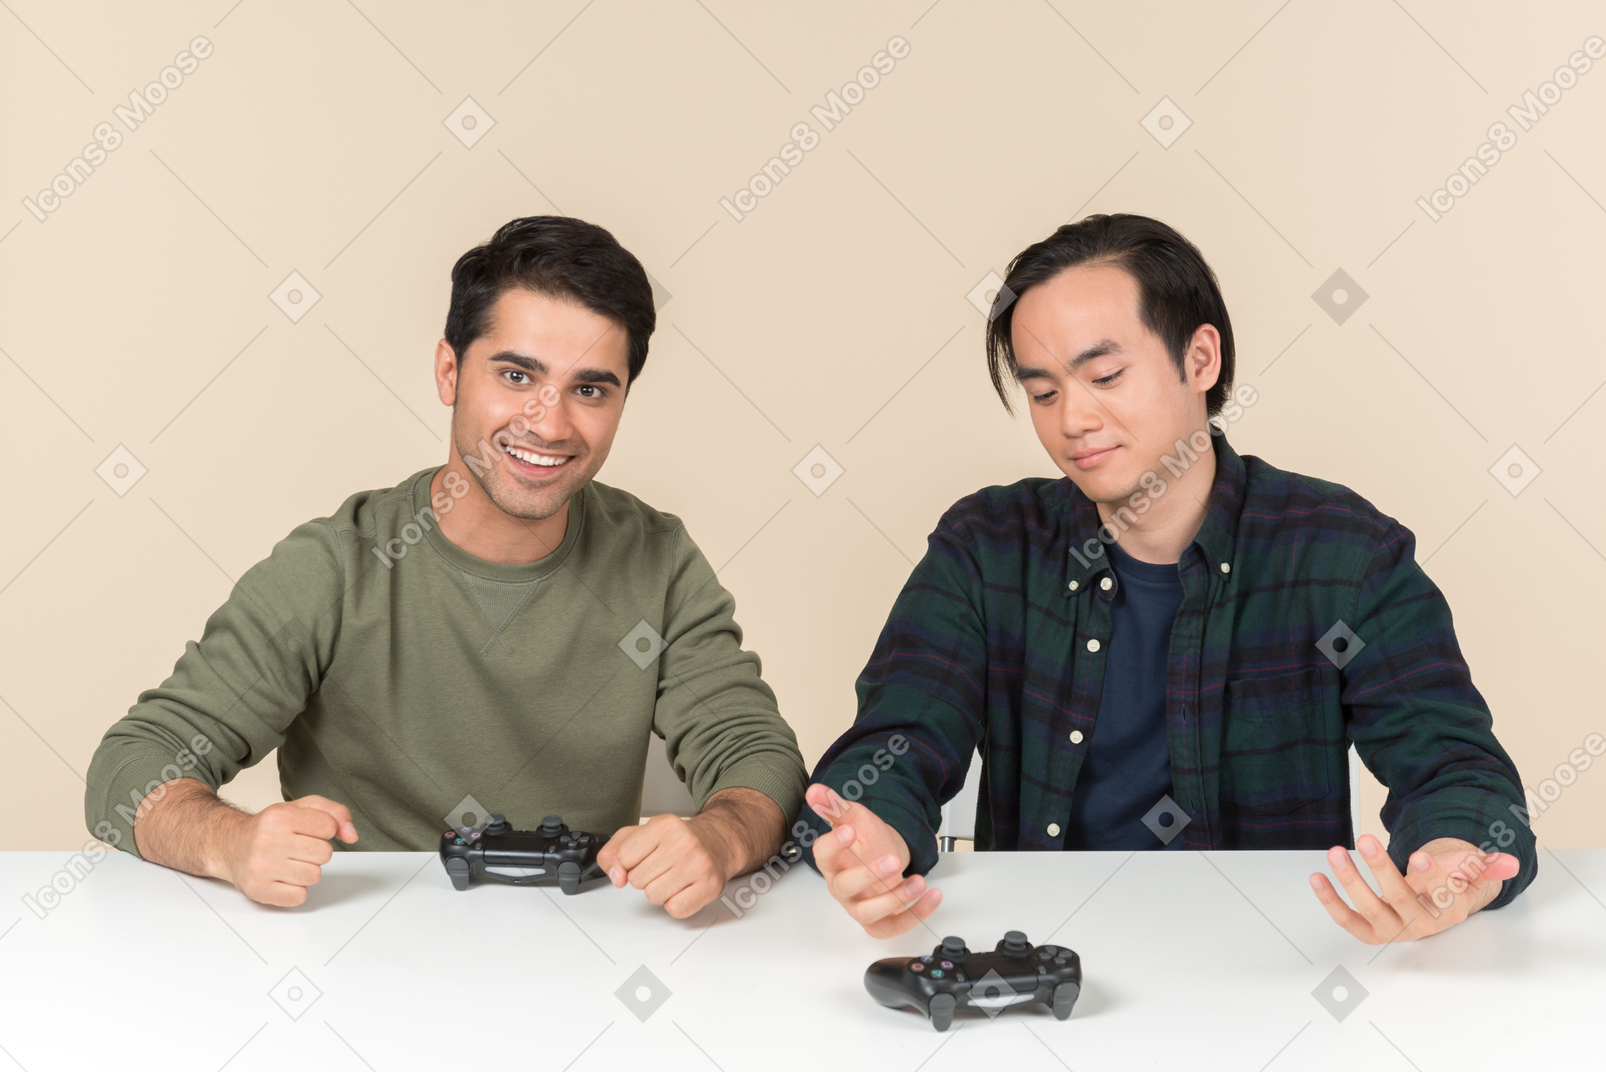 Межрасовые друзья сидят за столом и играют в видеоигры